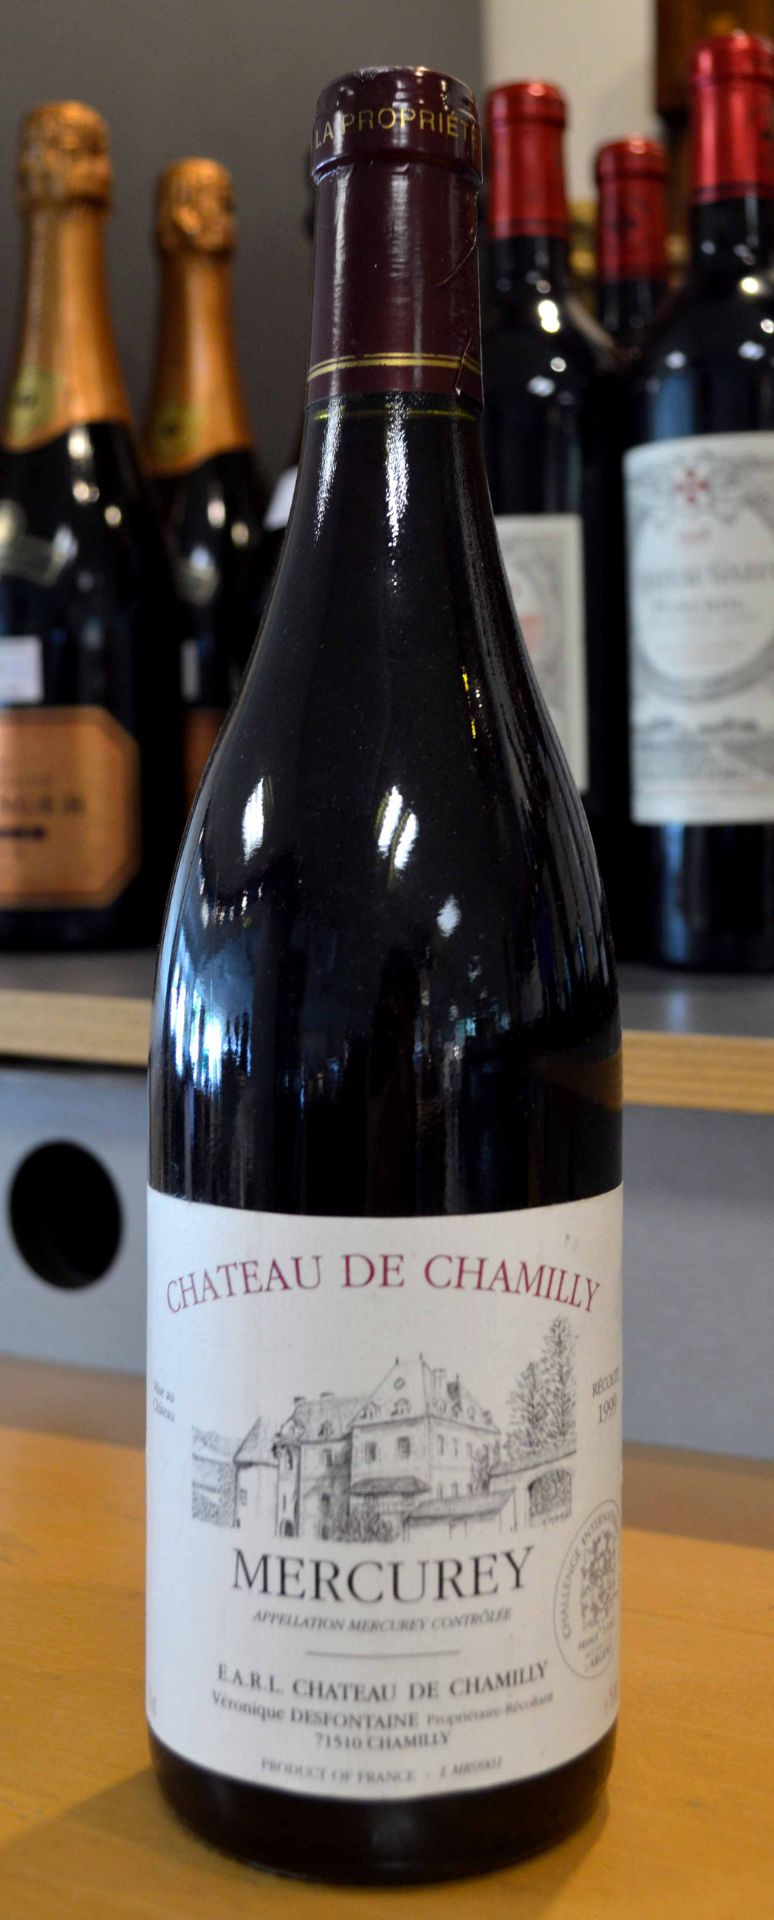 11 Flaschen von Chateau de Chamilly, Mercurey (1999), Rotwein, dazu 1x Jahrgang 1995, je0,75 L. Im